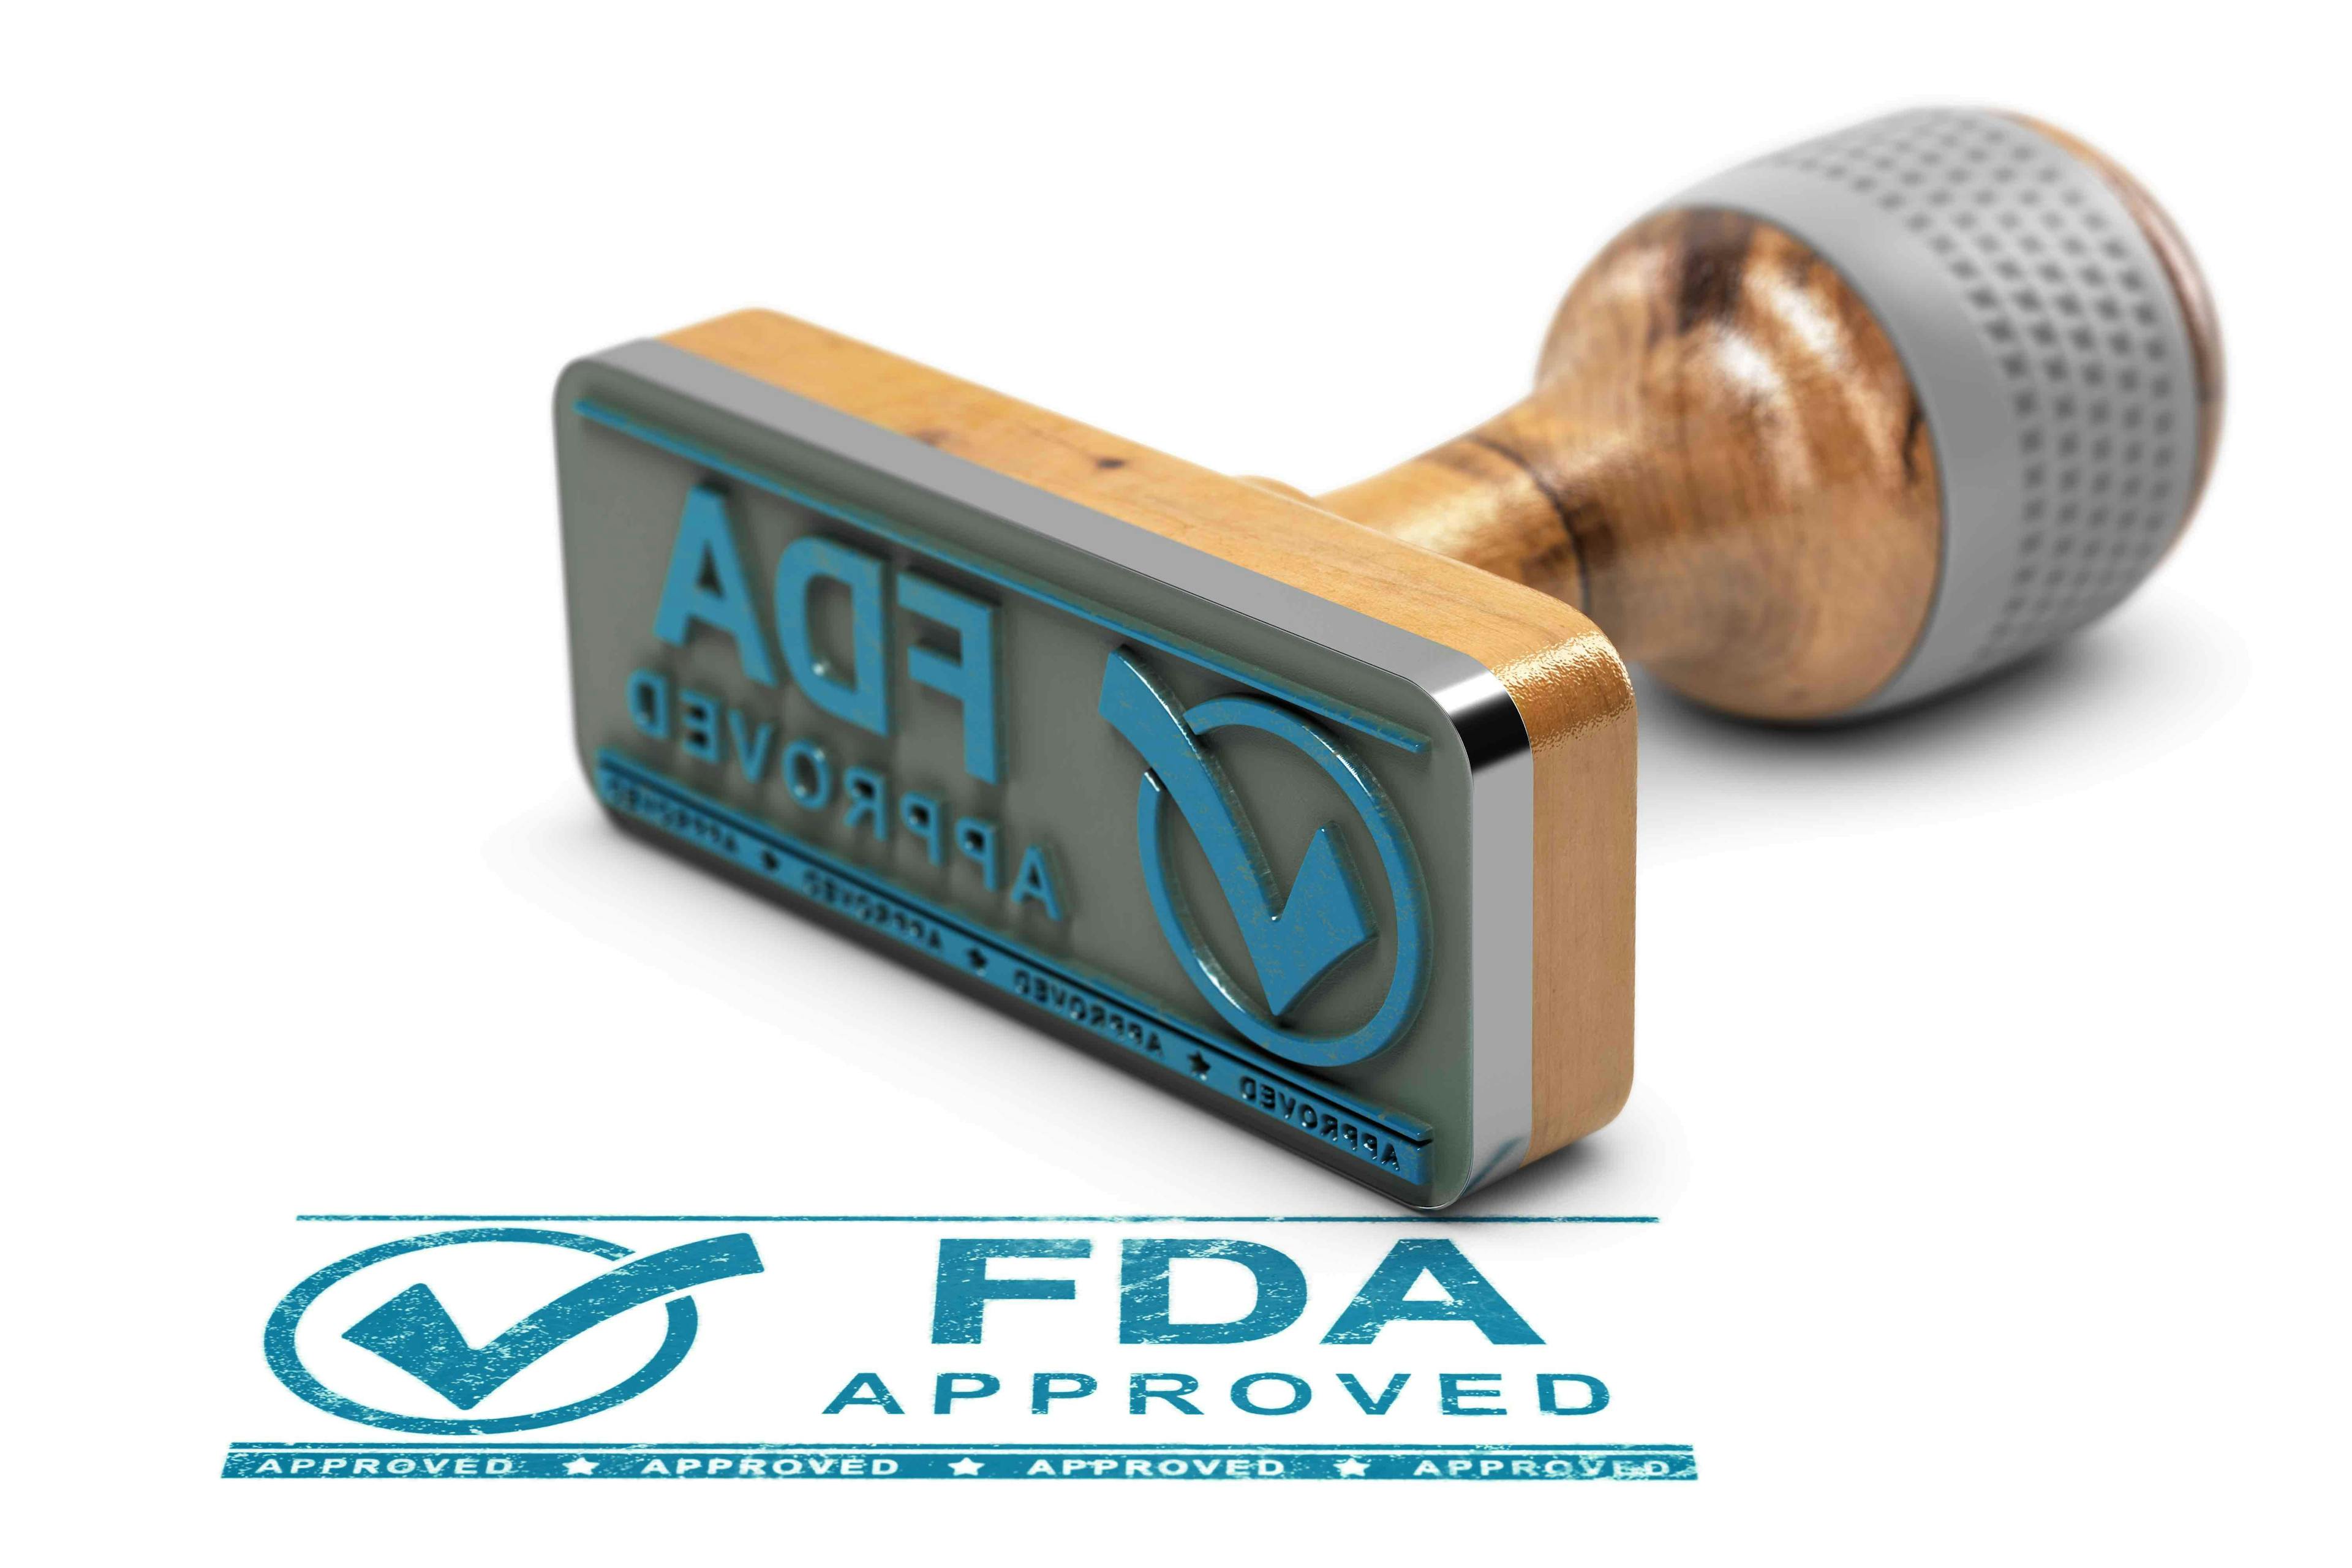 Blue FDA approved stamp | Imaged credit: Olivier Le Moal - stock.adobe.com